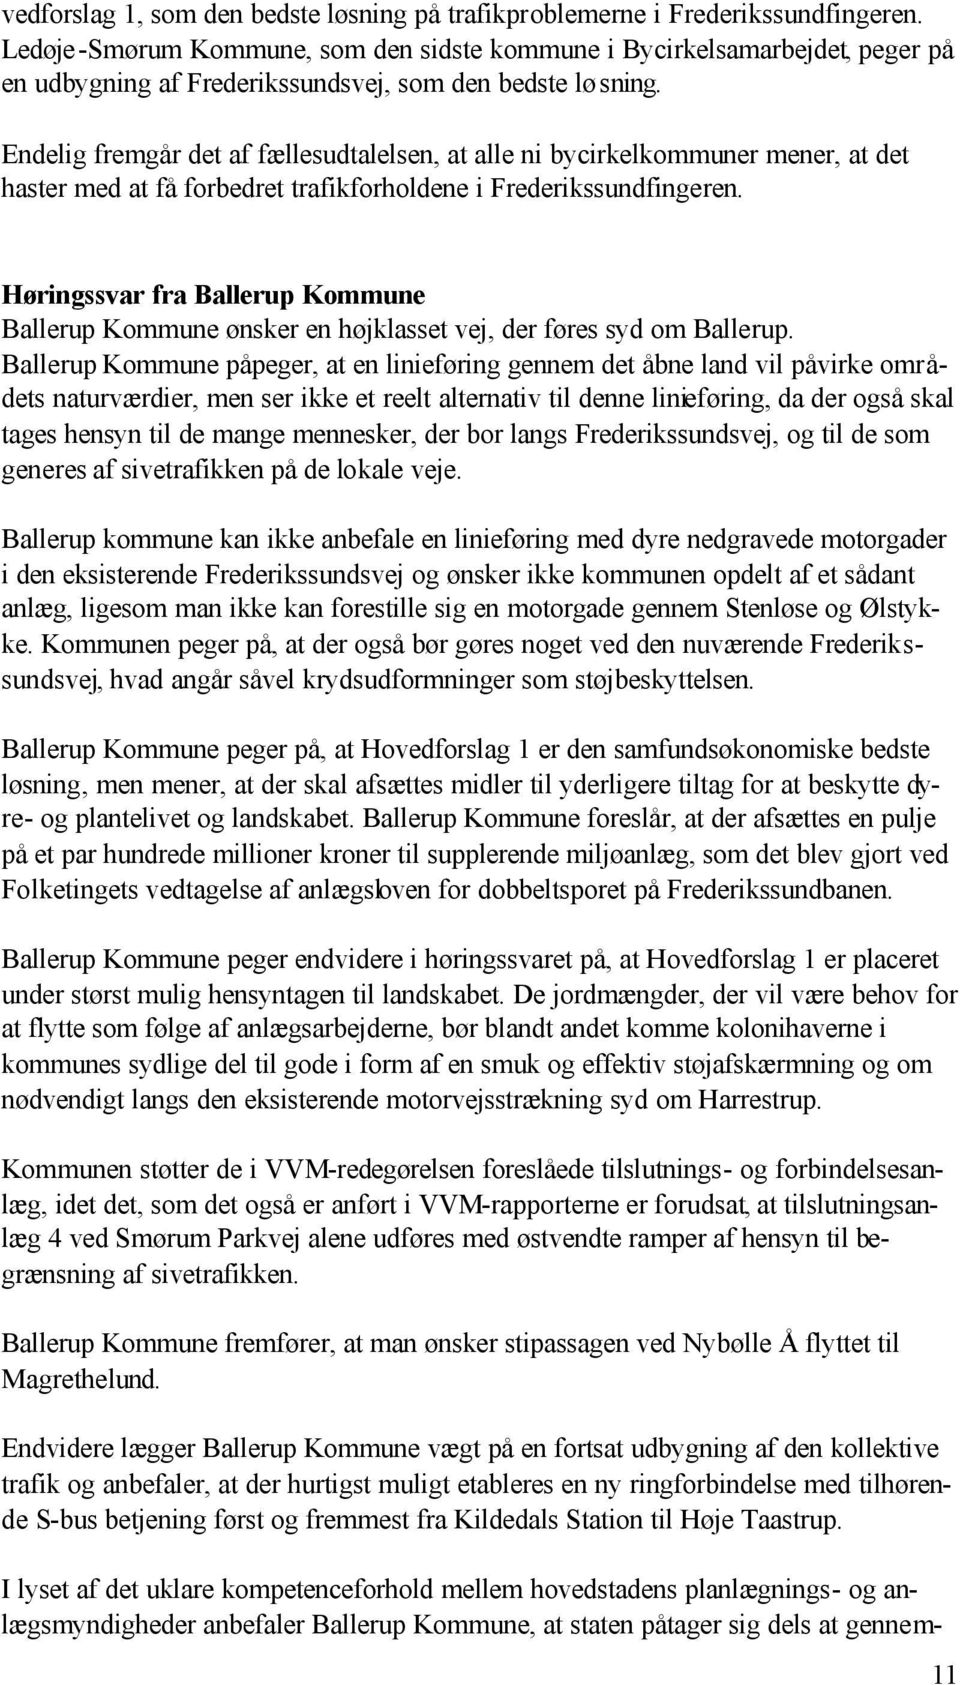 Endelig fremgår det af fællesudtalelsen, at alle ni bycirkelkommuner mener, at det haster med at få forbedret trafikforholdene i Frederikssundfingeren.